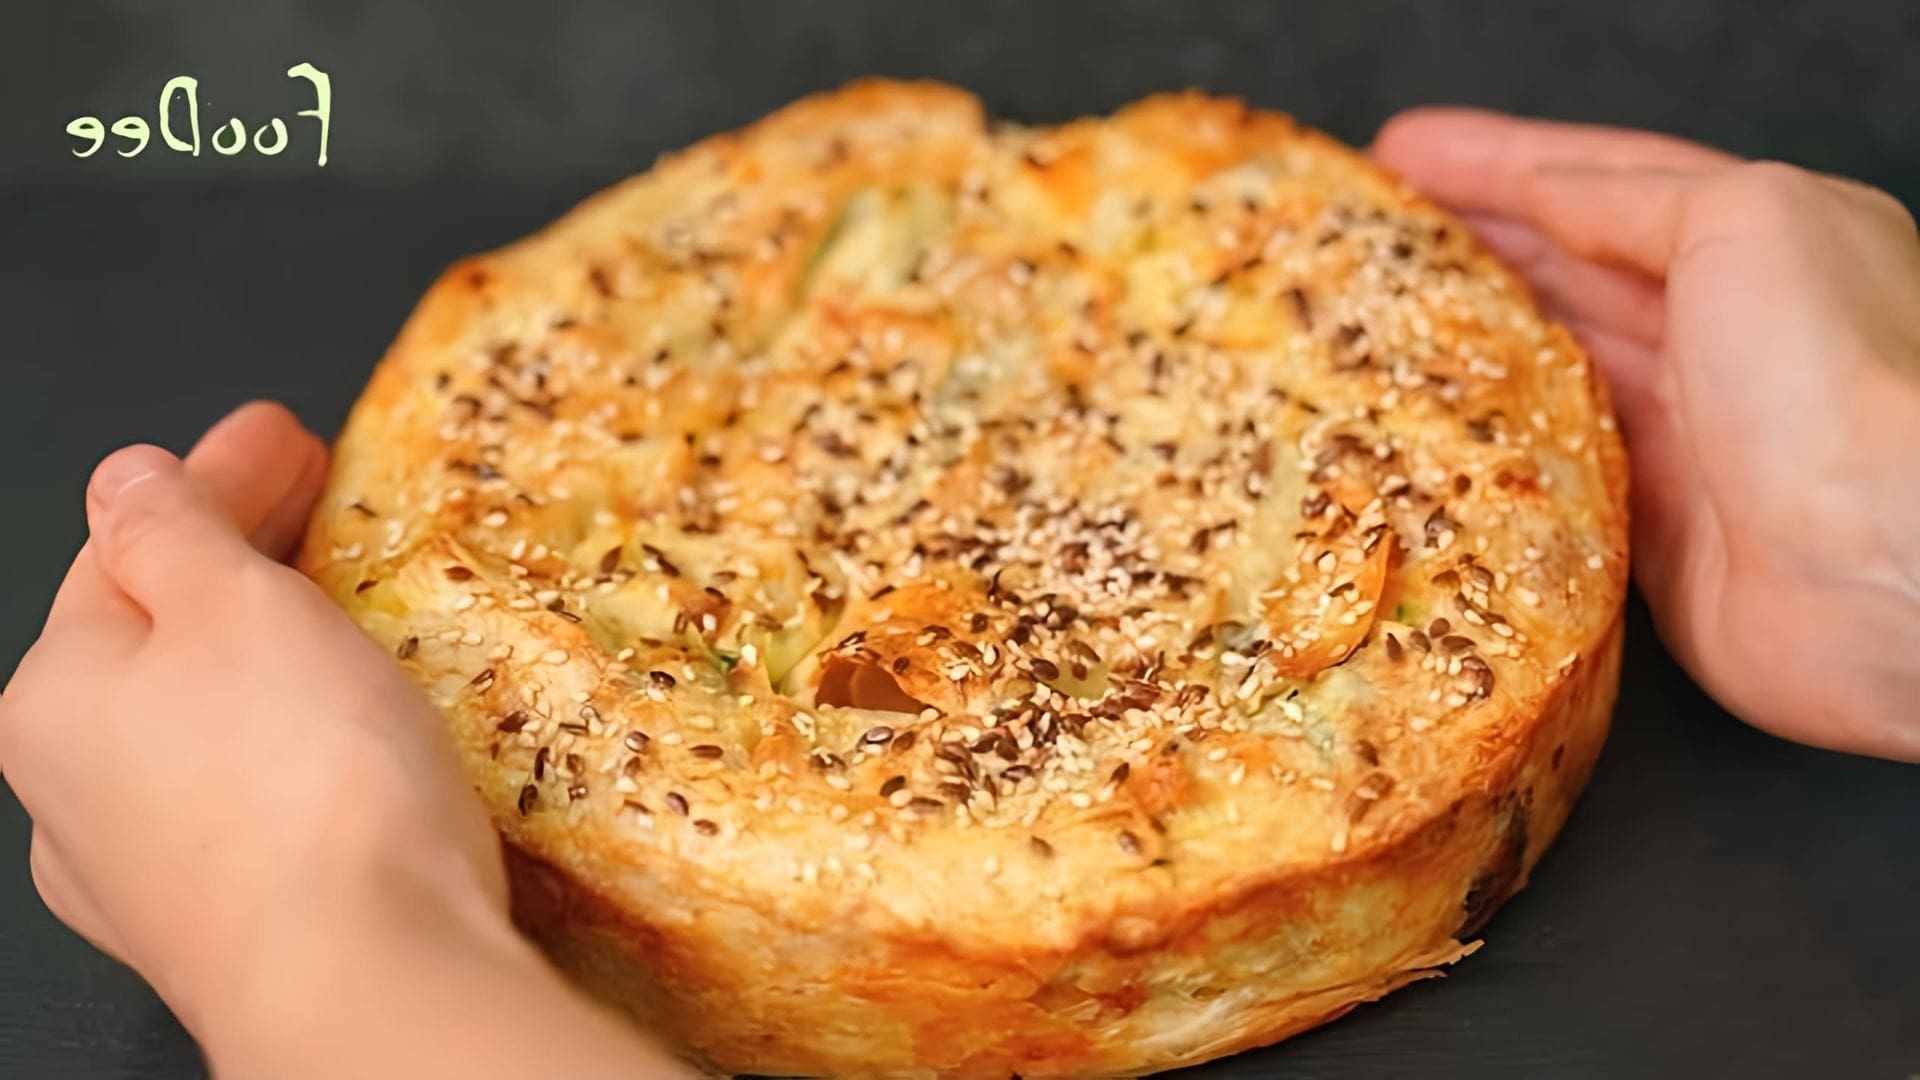 В этом видео демонстрируется рецепт приготовления пирога из лаваша с сыром, шпинатом и сливочным маслом